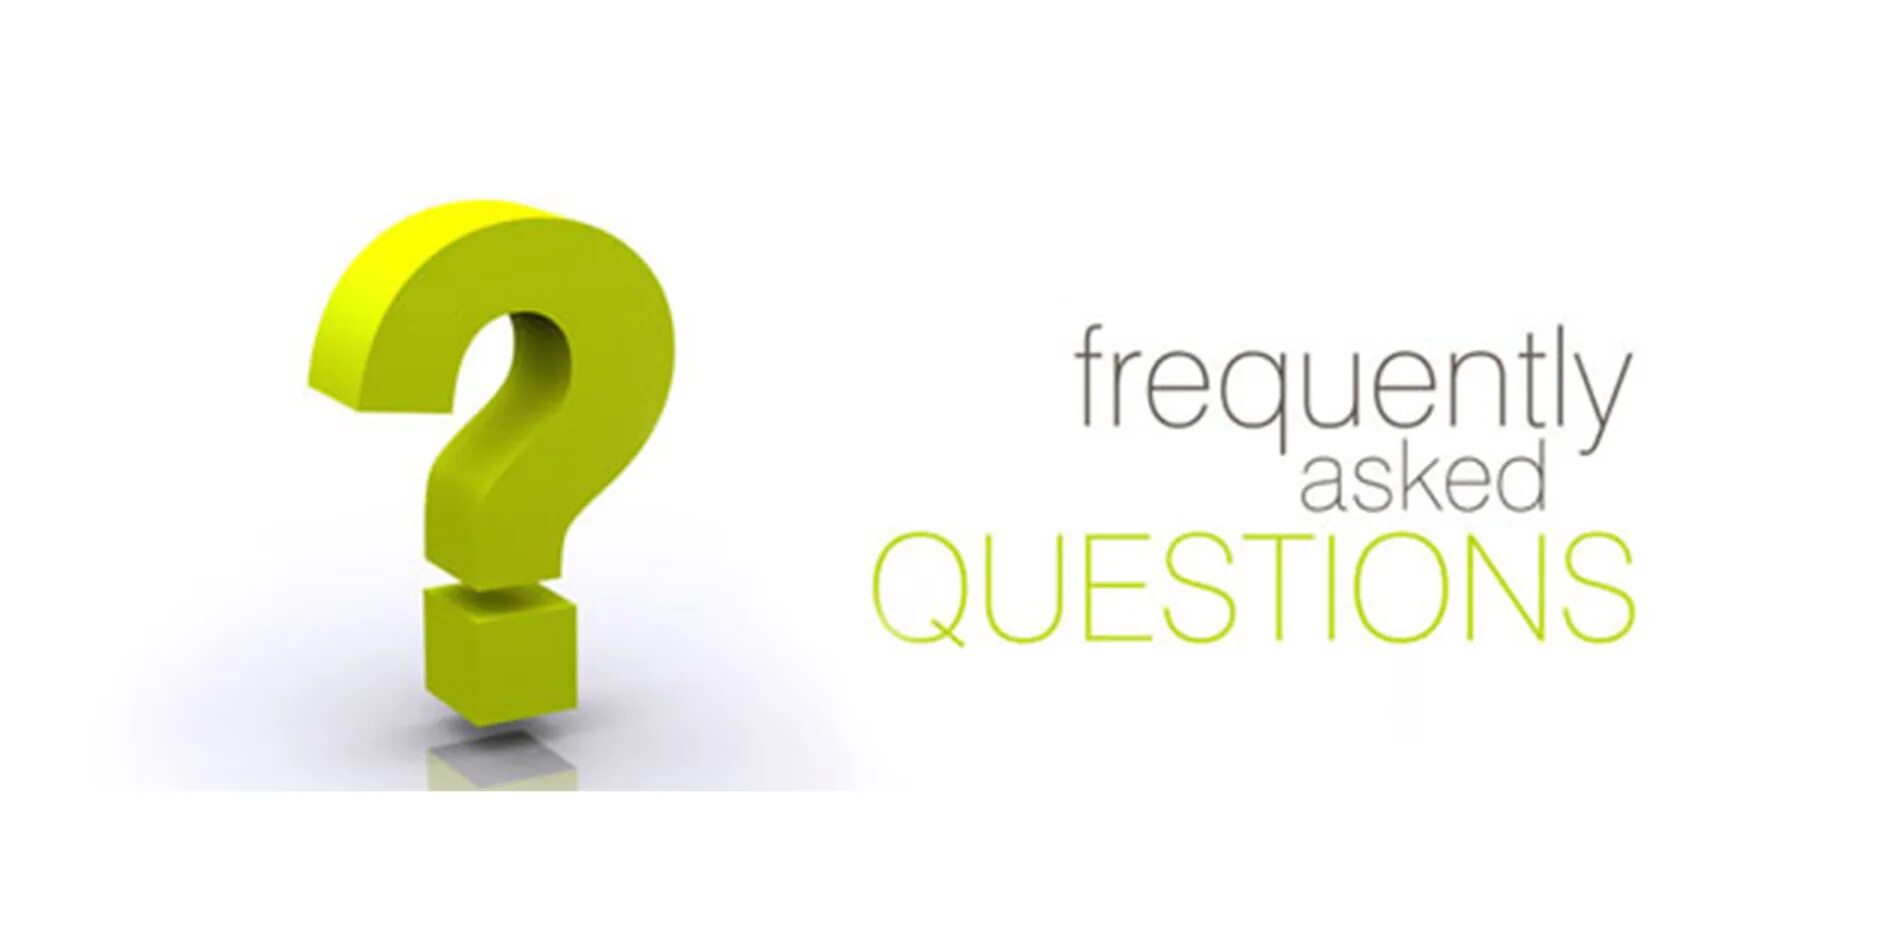 Вопрос авансом. Ответы на часто задаваемые вопросы. Частые вопросы. Вопрос-ответ. Рубрика частые вопросы.